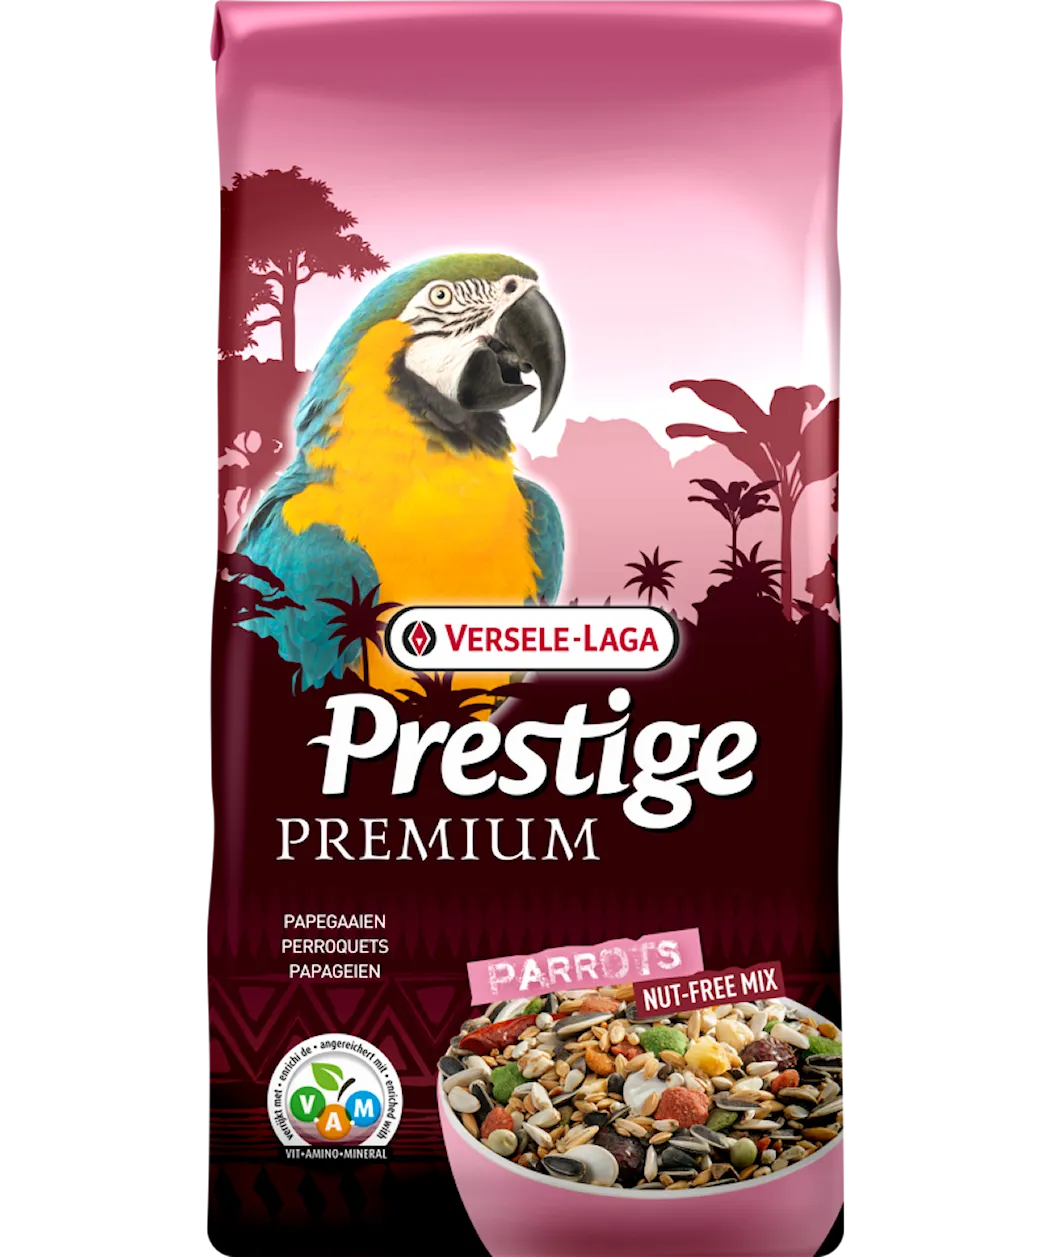 Versele-Laga Prestige Premium Parrots Mix without nuts 15 kg